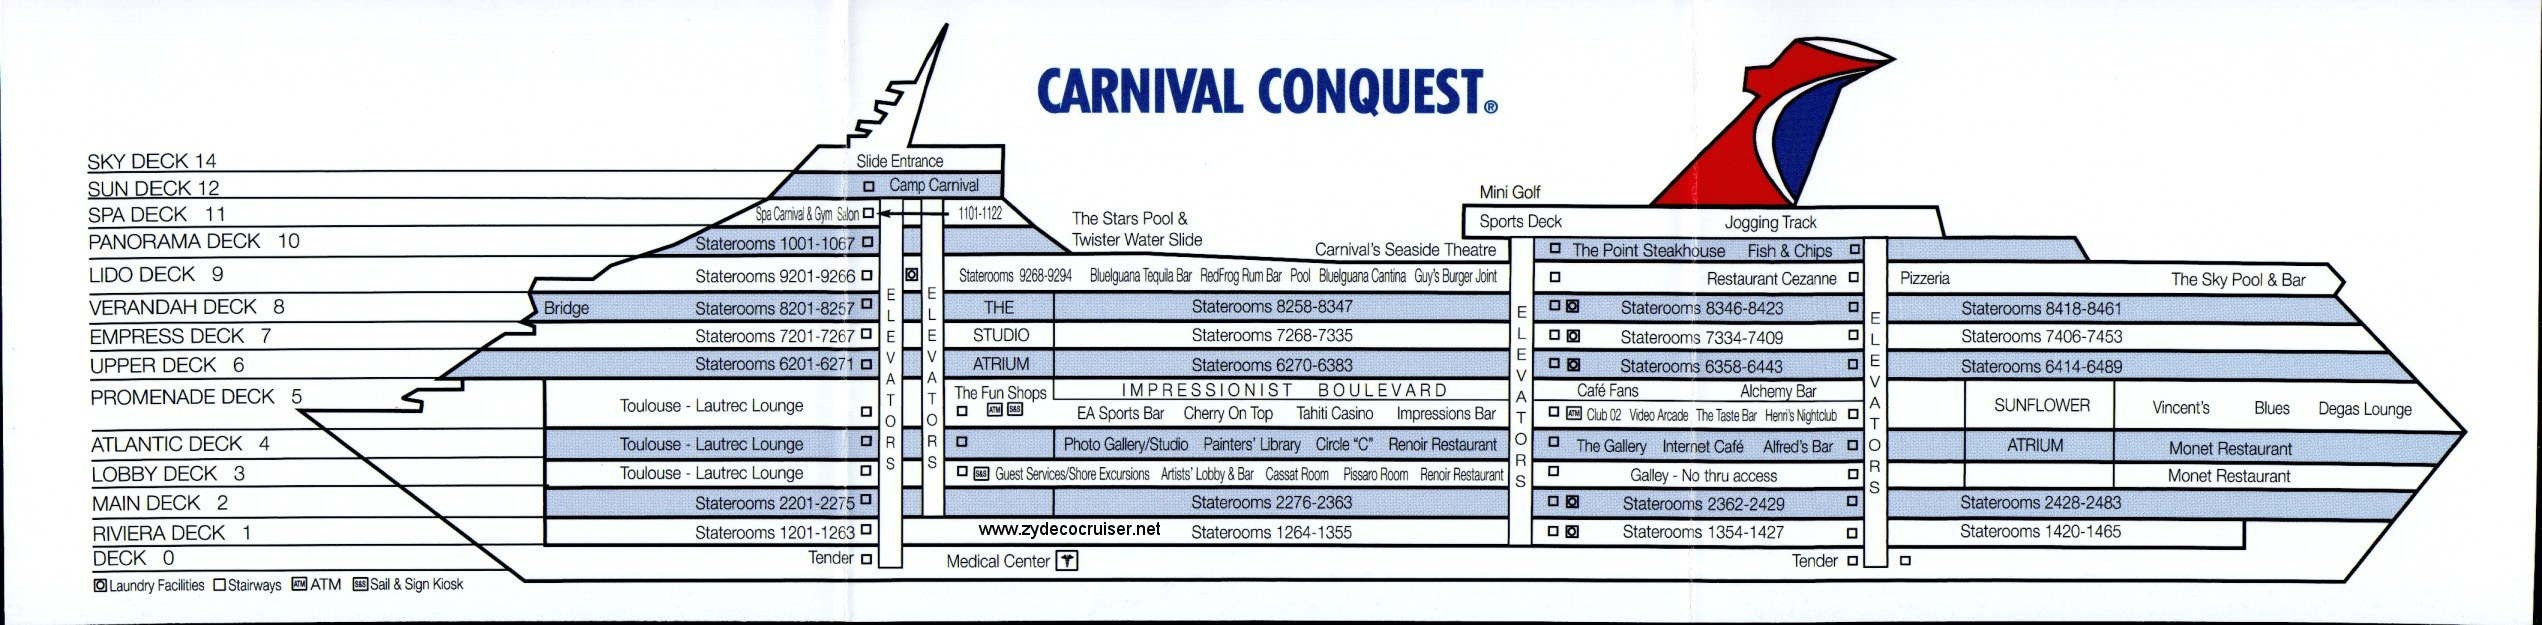 Carnival Conquest - самый лучший круизный лайнер